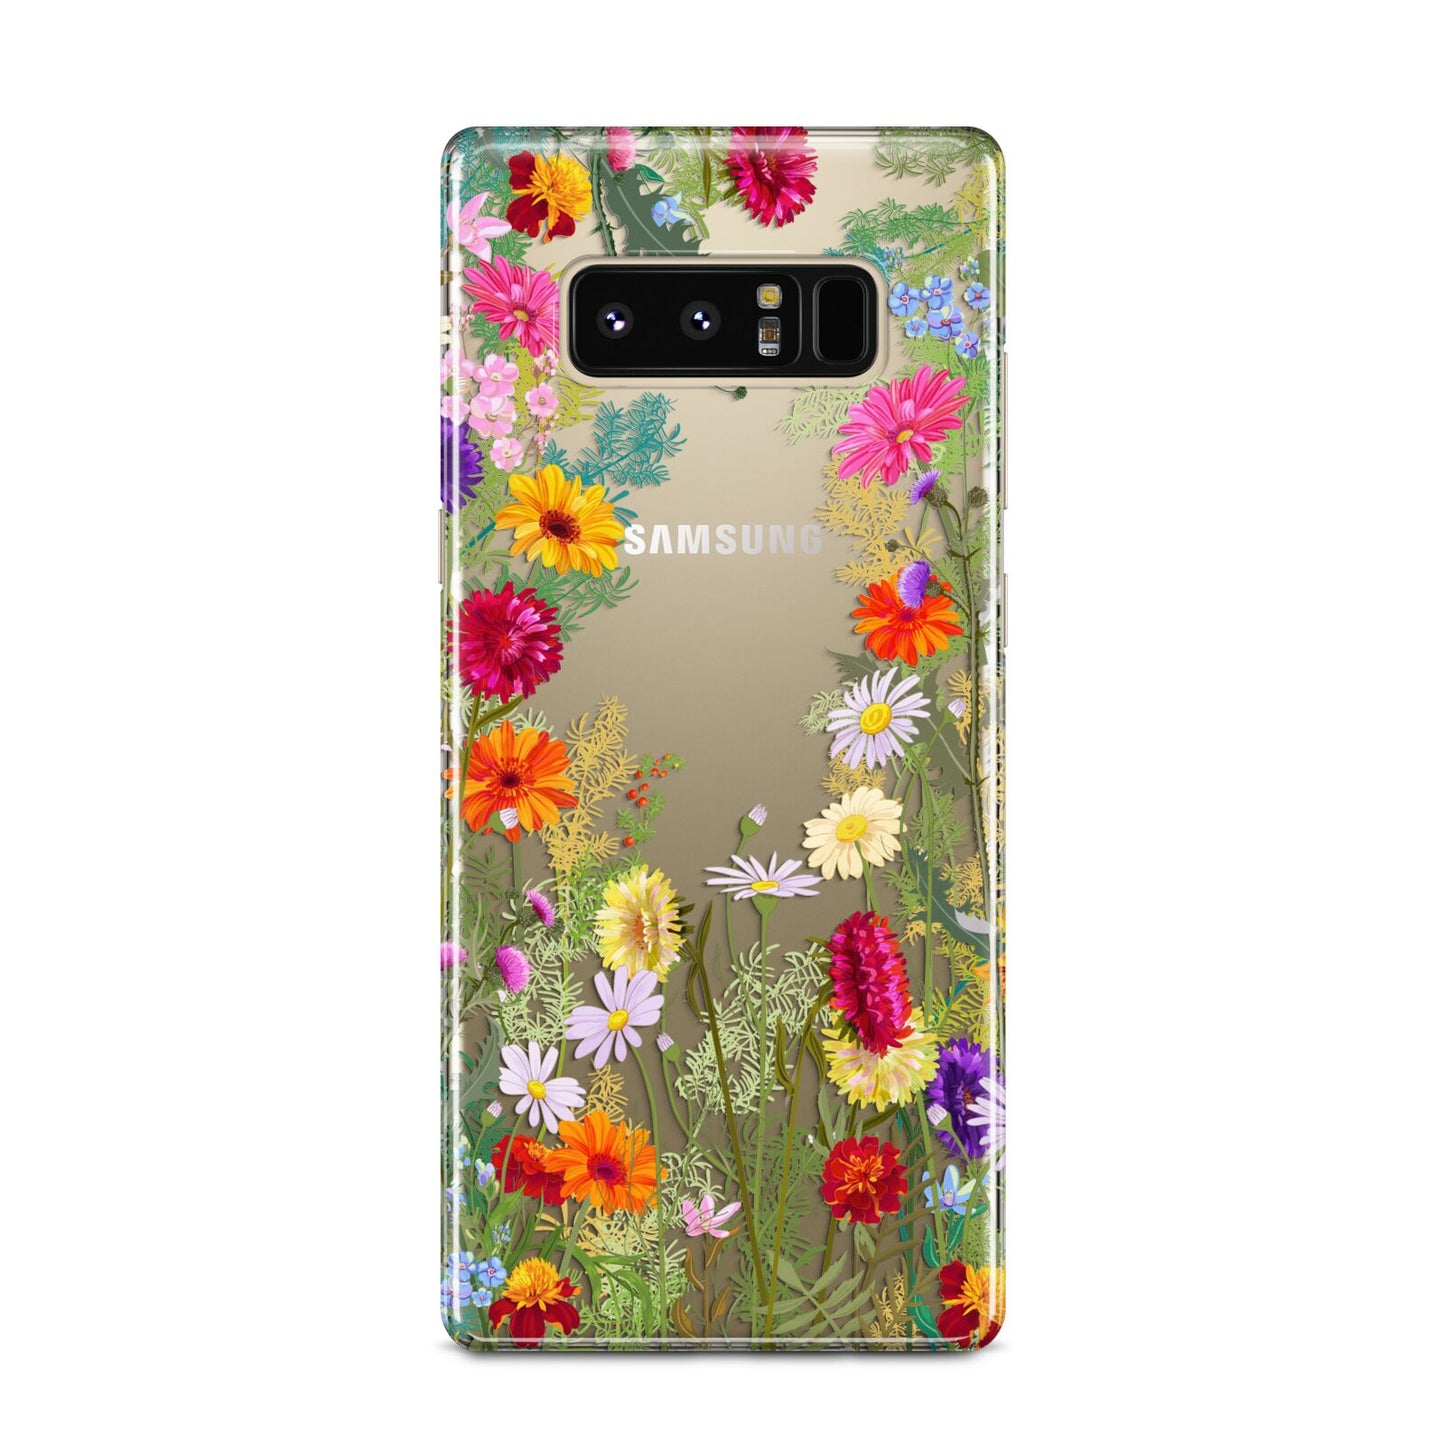 Wildflower Samsung Galaxy Note 8 Case